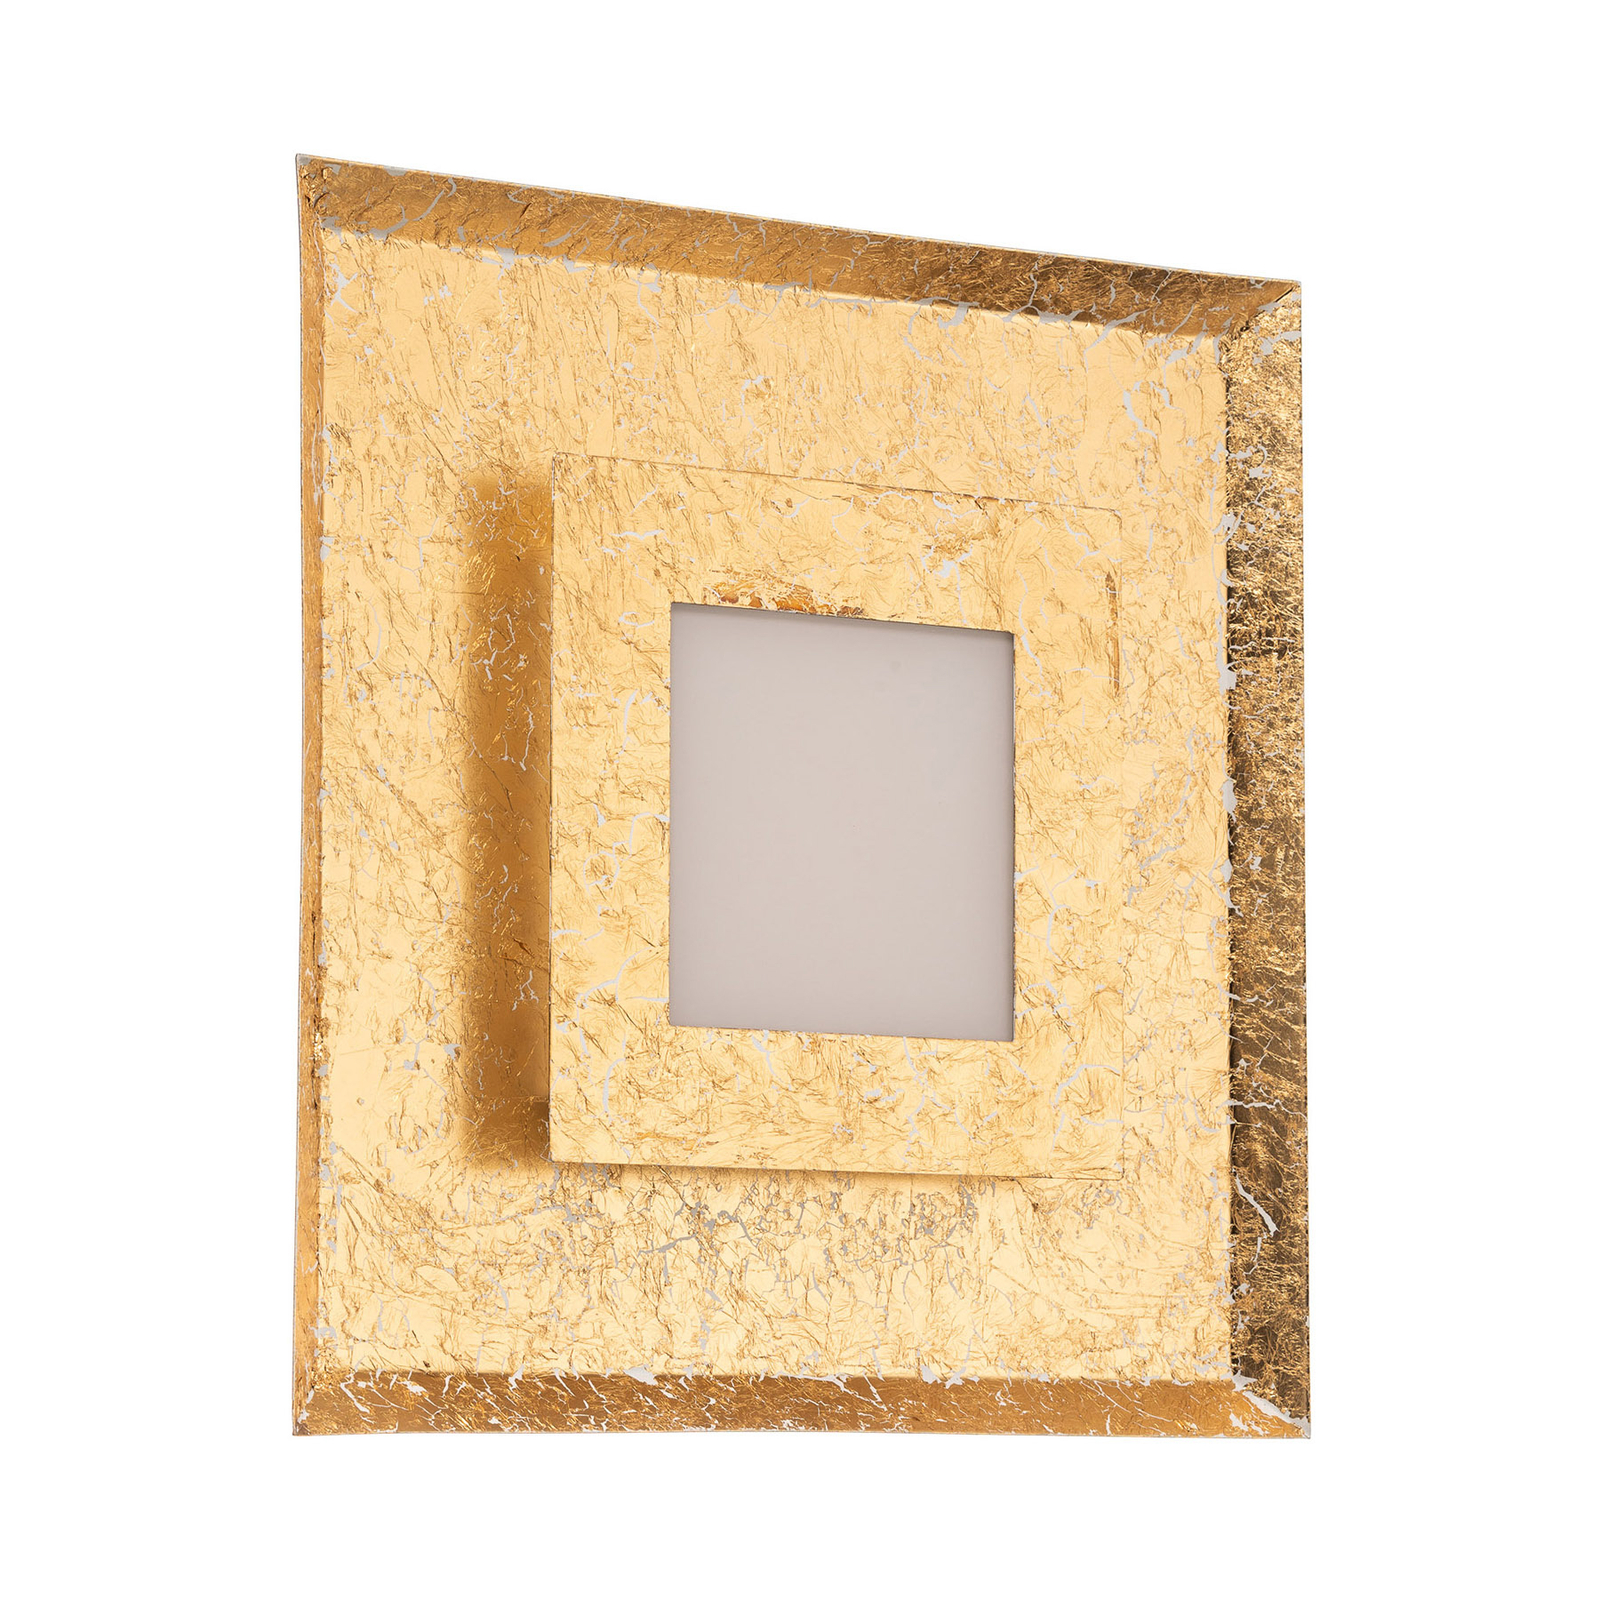 Window-LED-seinävalaisin, 39 x 39 cm, kulta